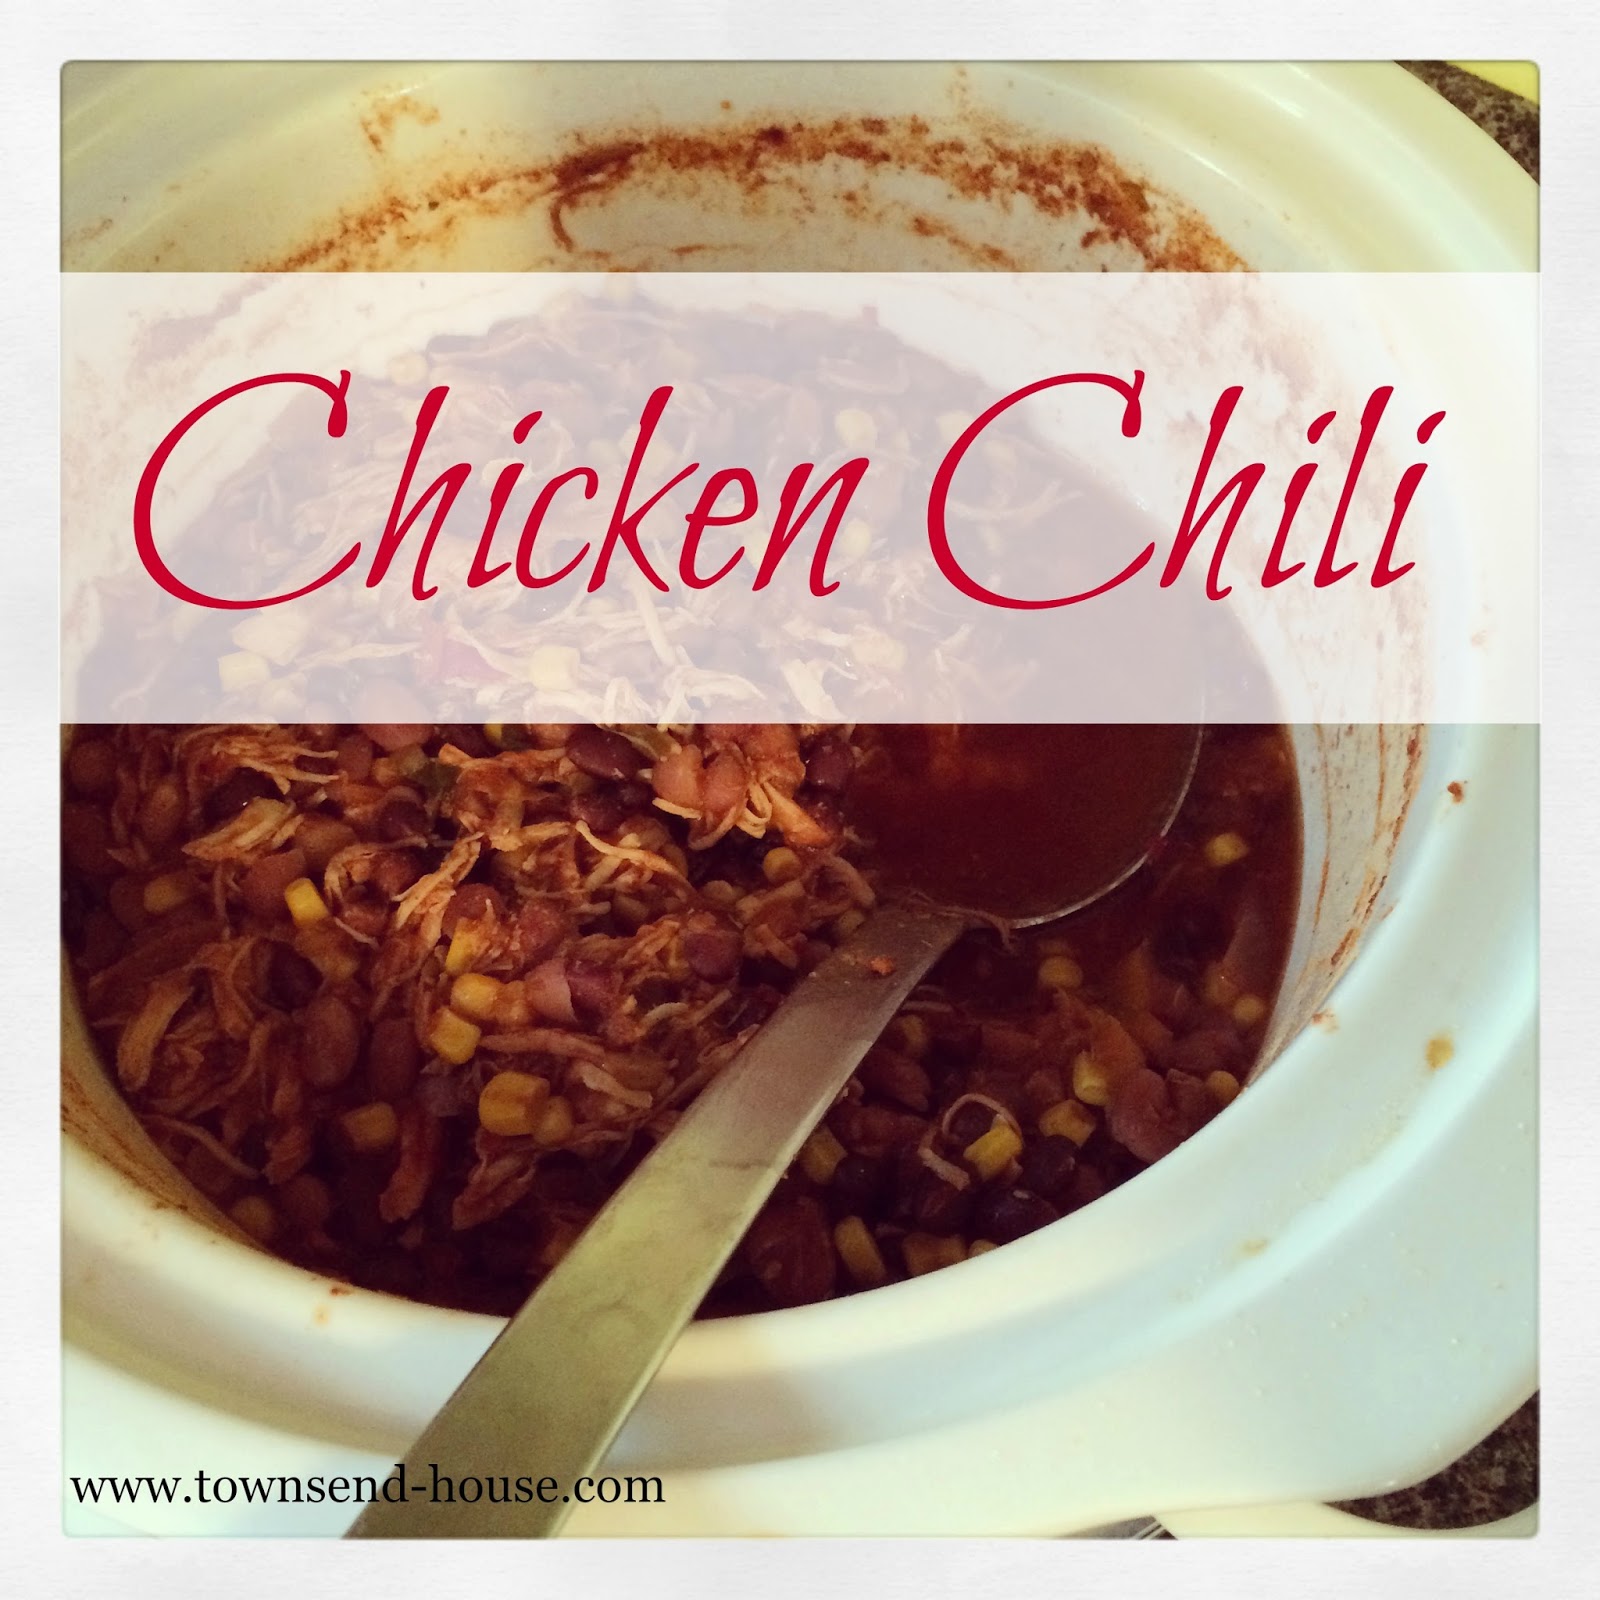 Chicken Chili Recipe